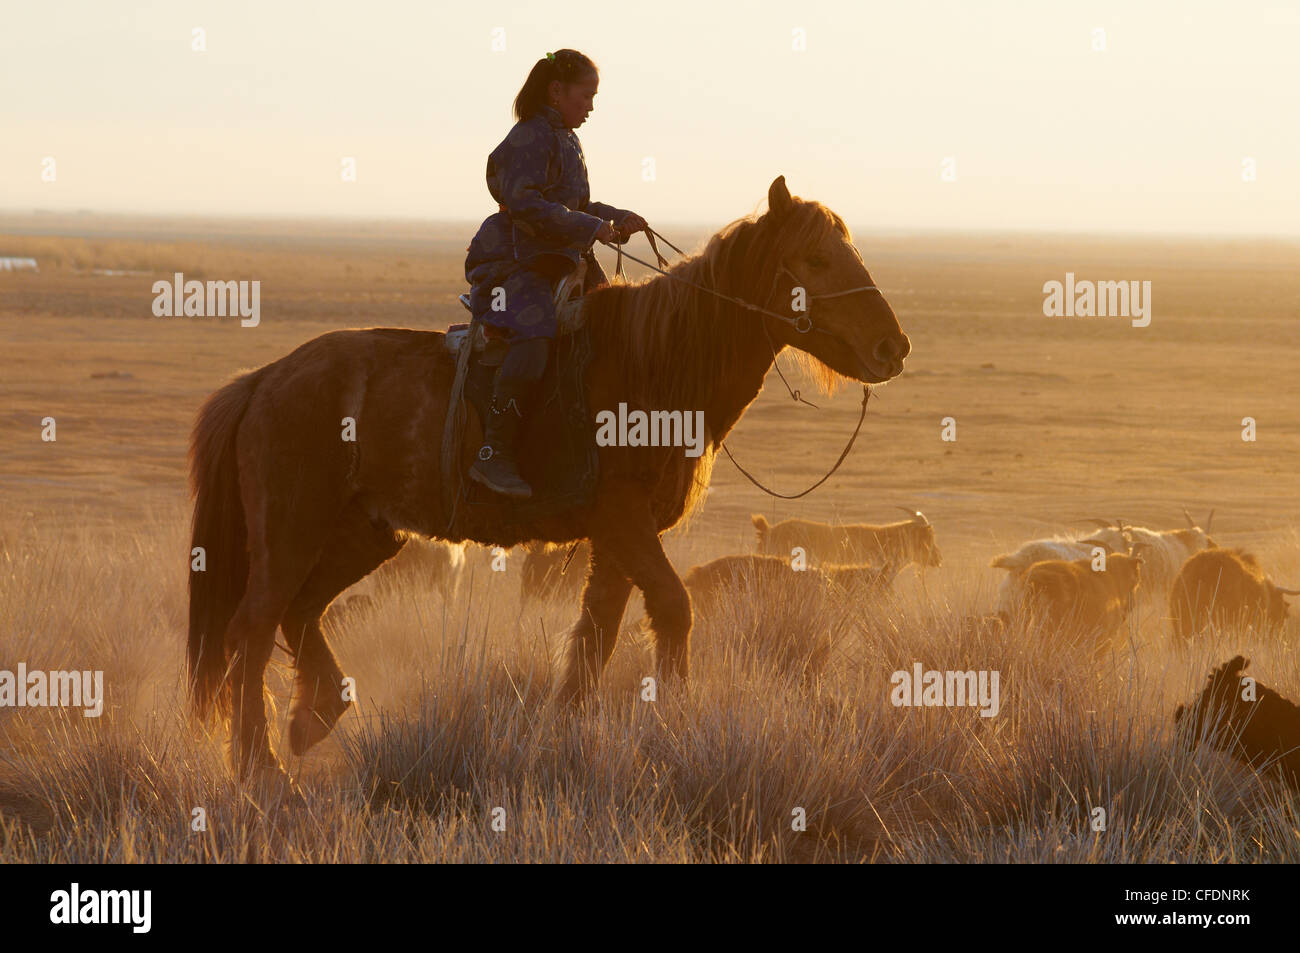 Jeune fille de Mongolie à cheval, province de Khovd, Mongolie, Asie centrale, Asie Banque D'Images